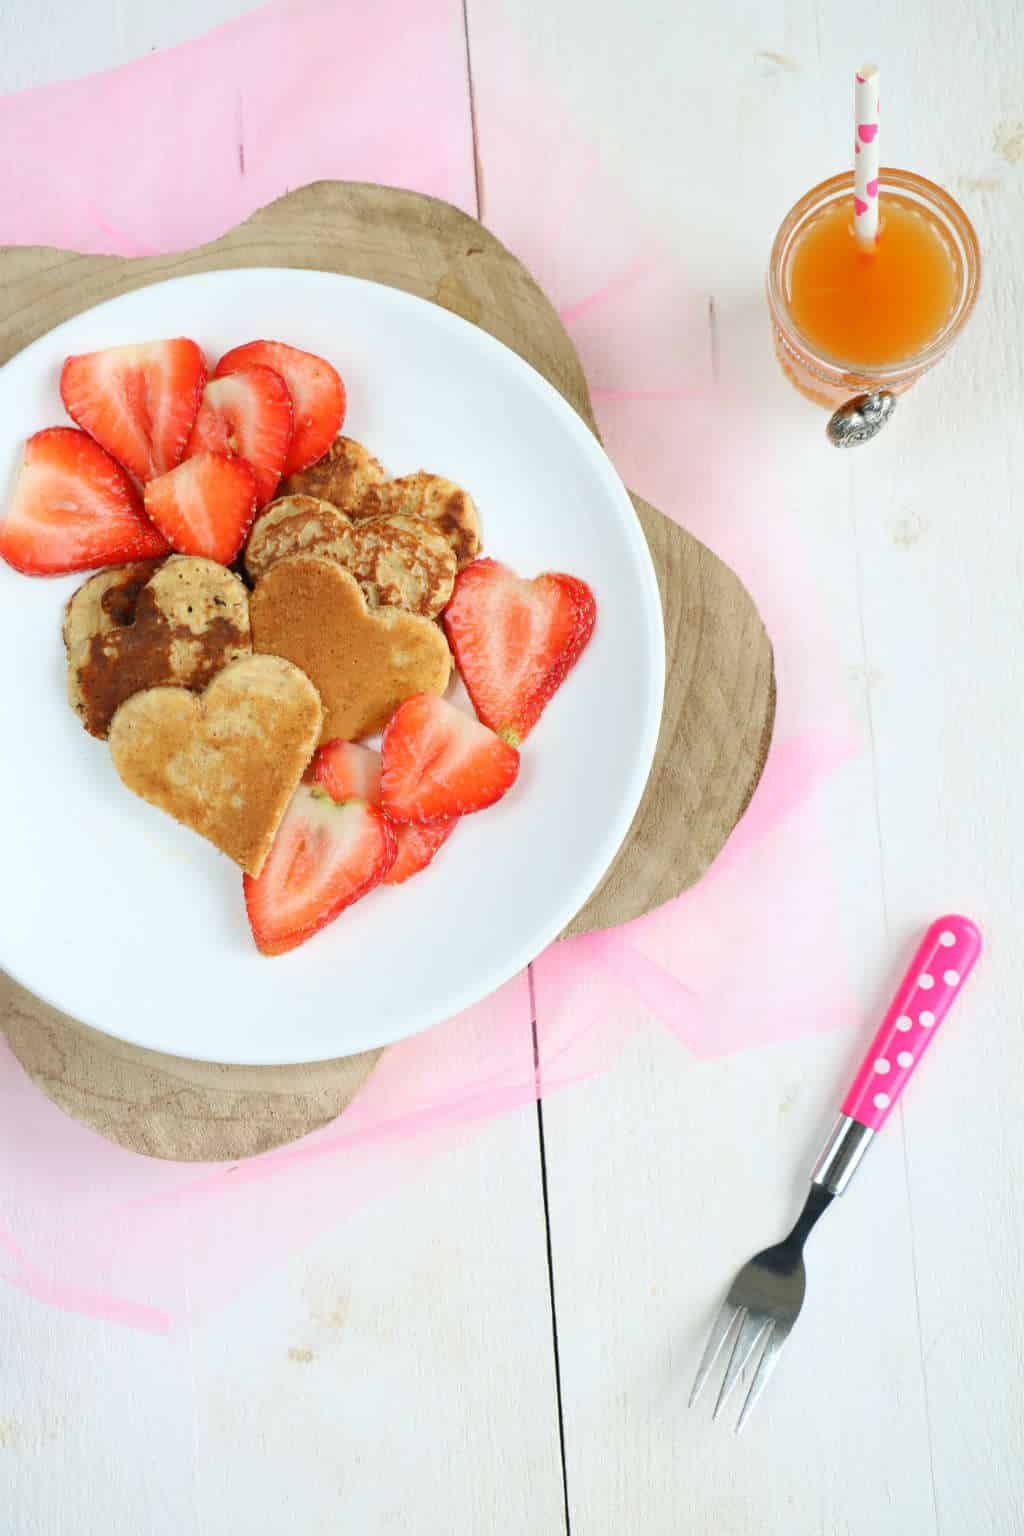 Yoghurt pannenkoeken met gemarineerde aardbeien. Voor een feestontbijt of gewoon omdat het kan. Geniet van je verwenontbijt.